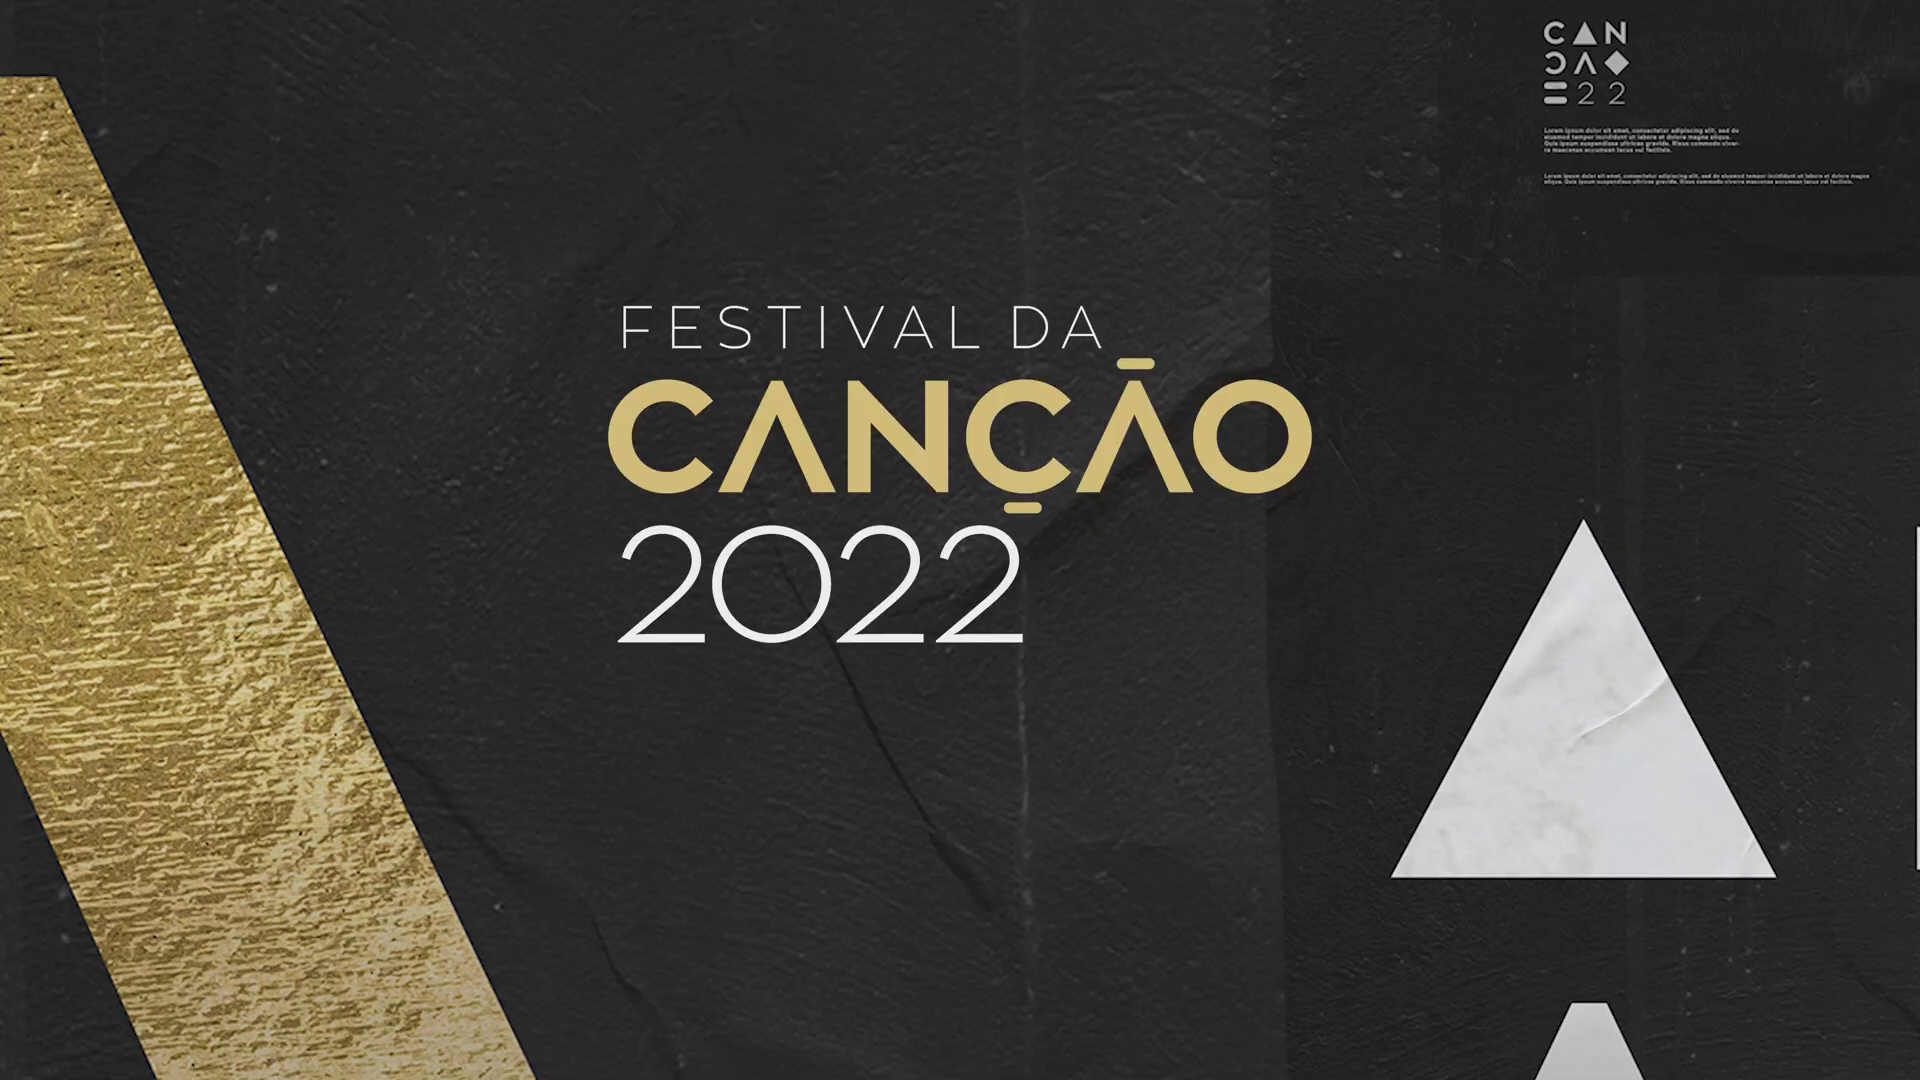 Portugal: Festival da Canção 2022 kicks off tonight!